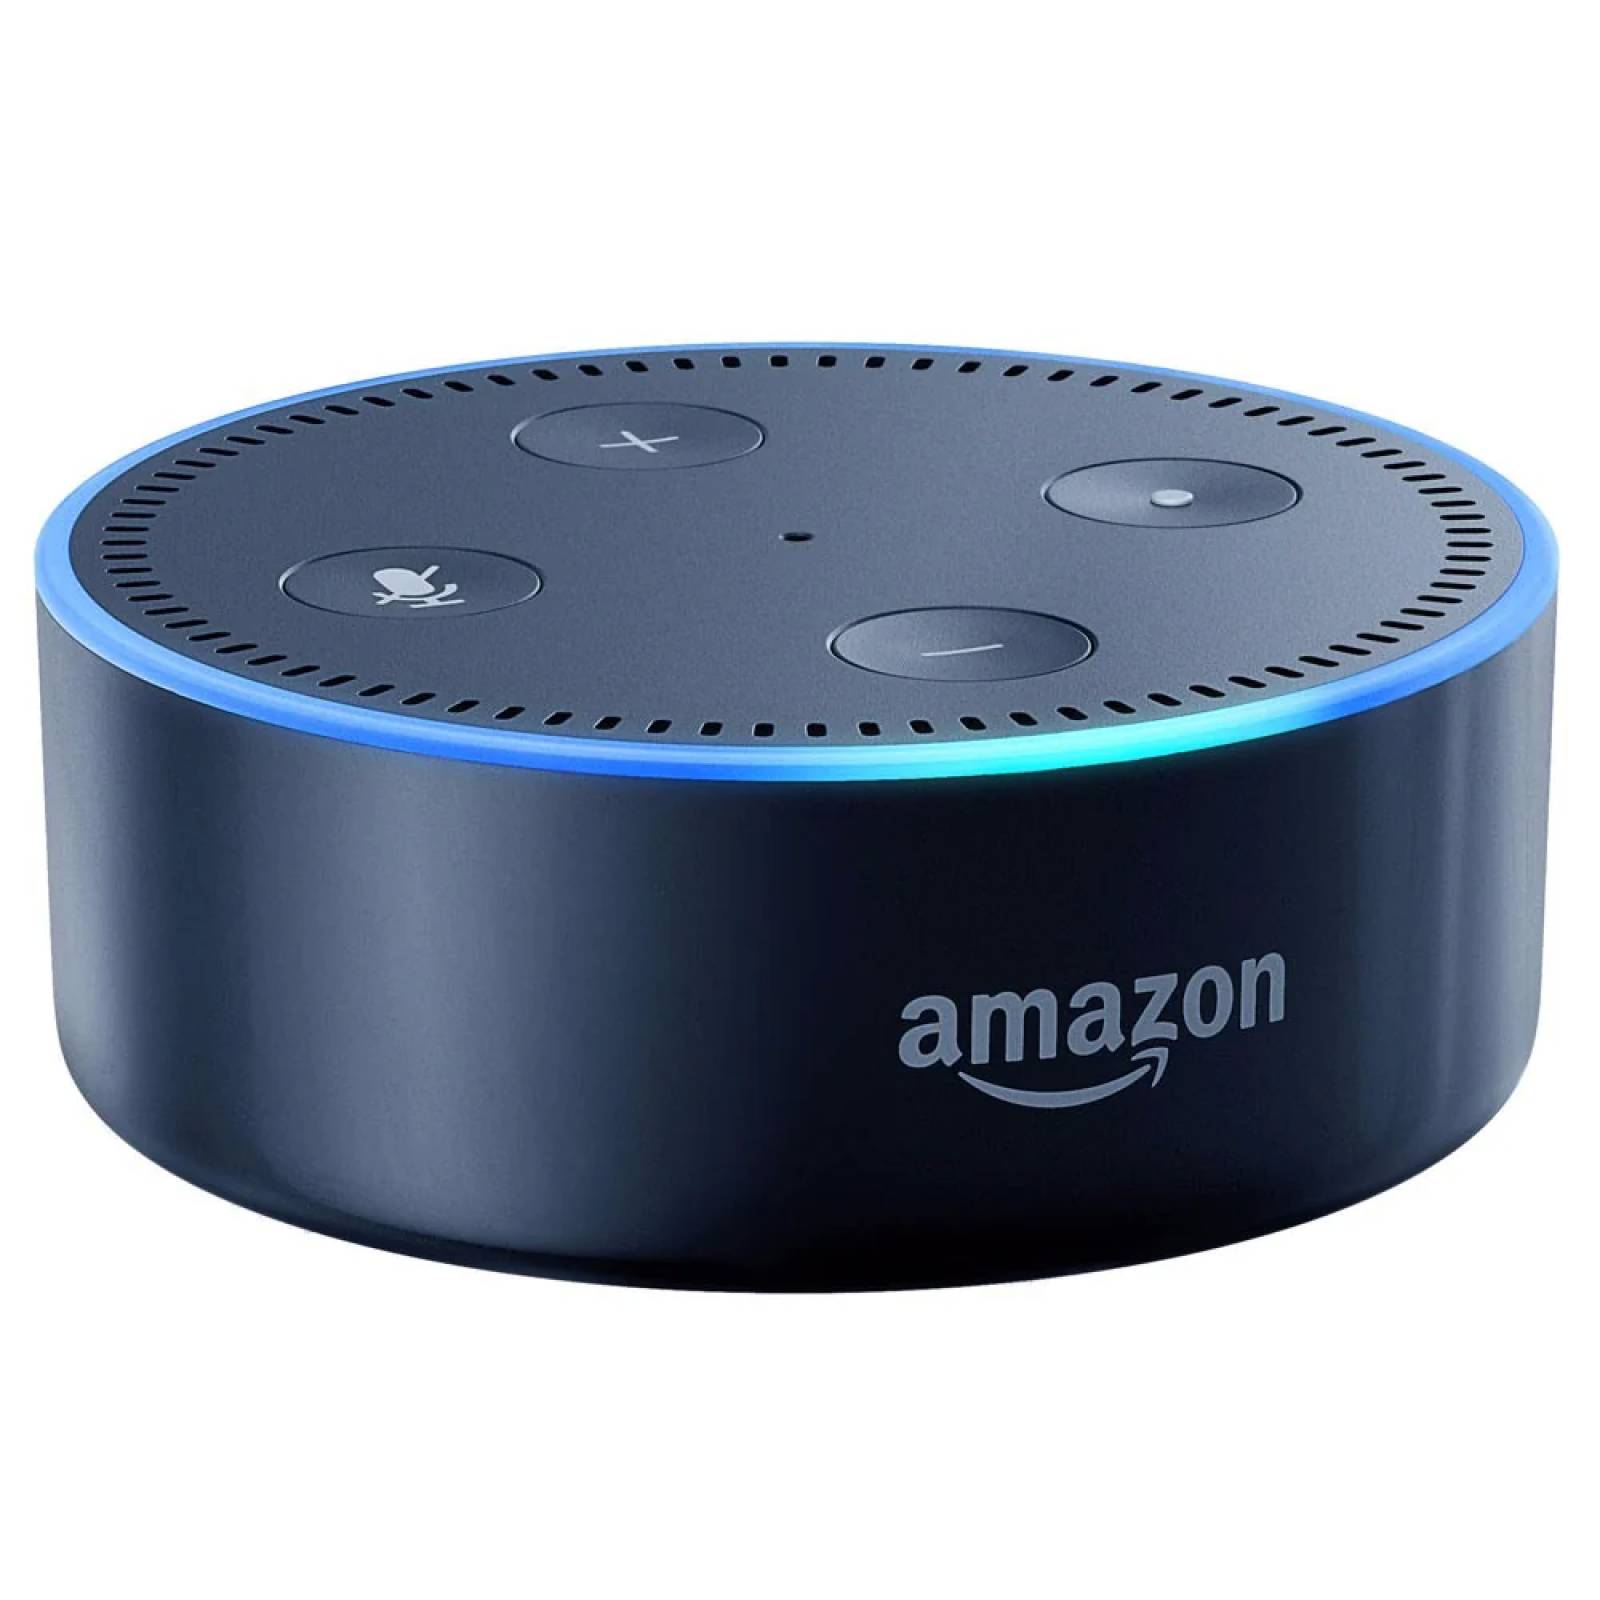 Echo Dot Con Asistente Virtual Alexa Azul - PC Tel Computo